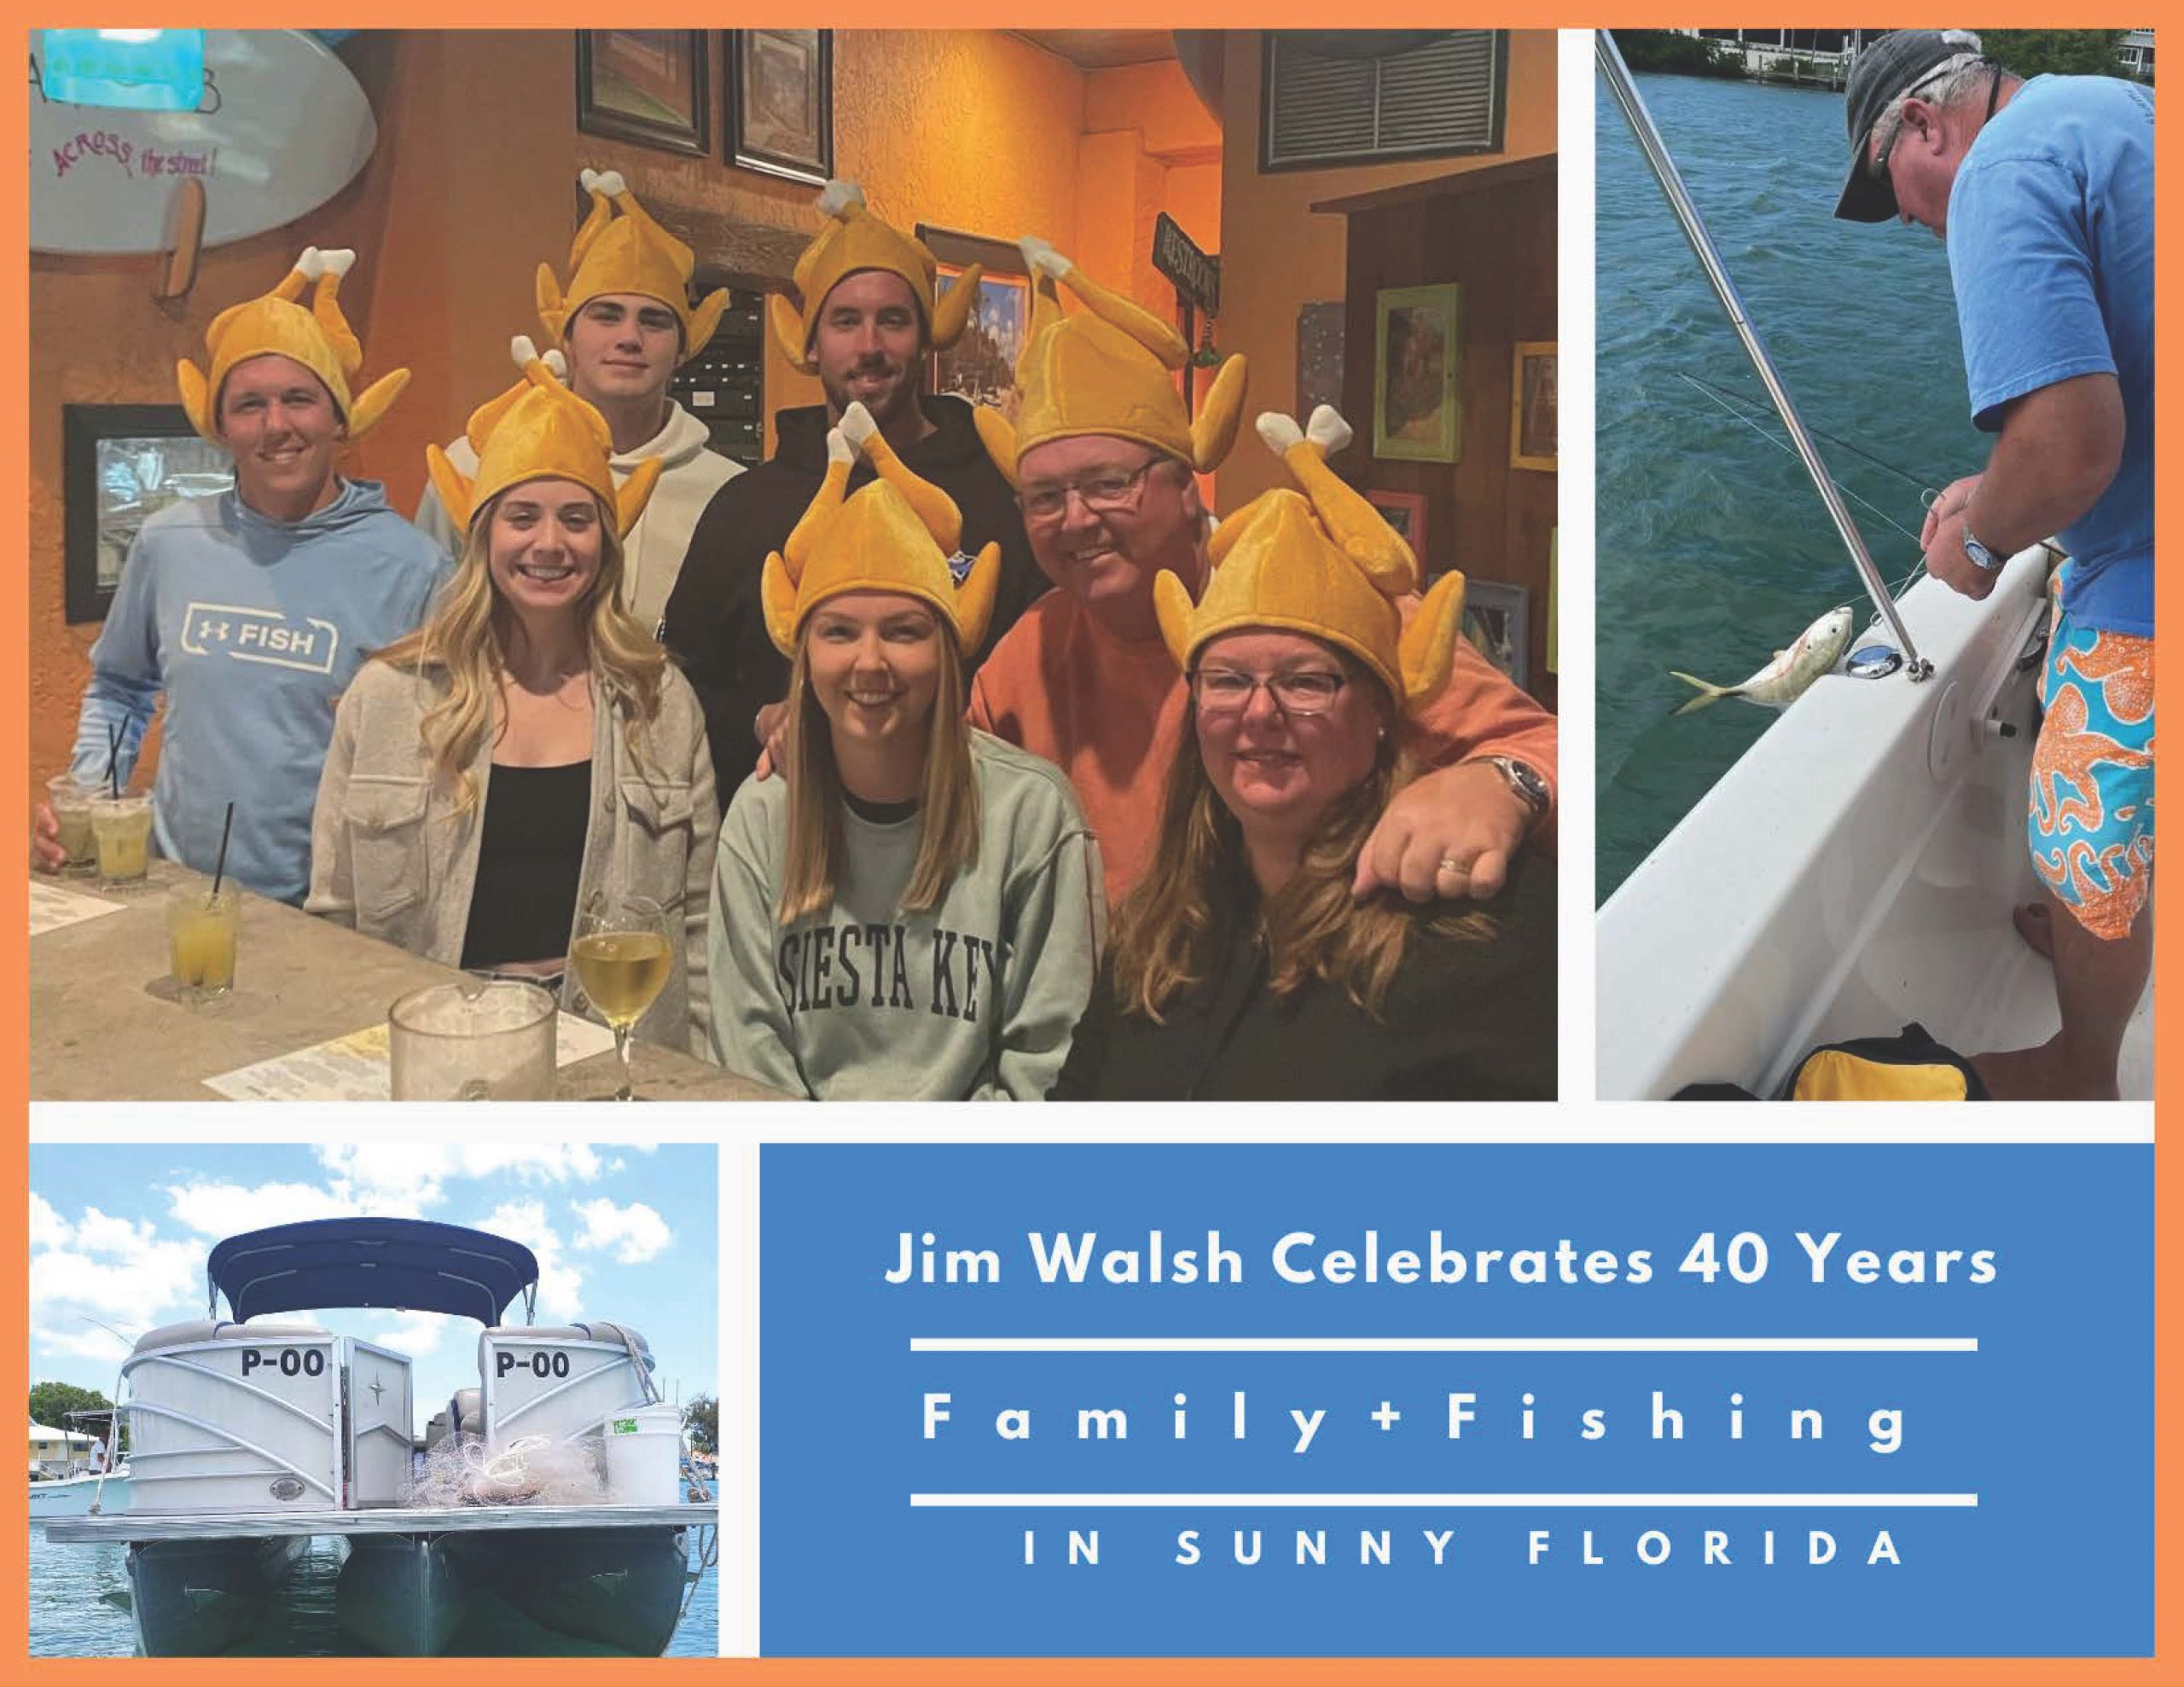 Jim Walsh Celebrates 40 Years 